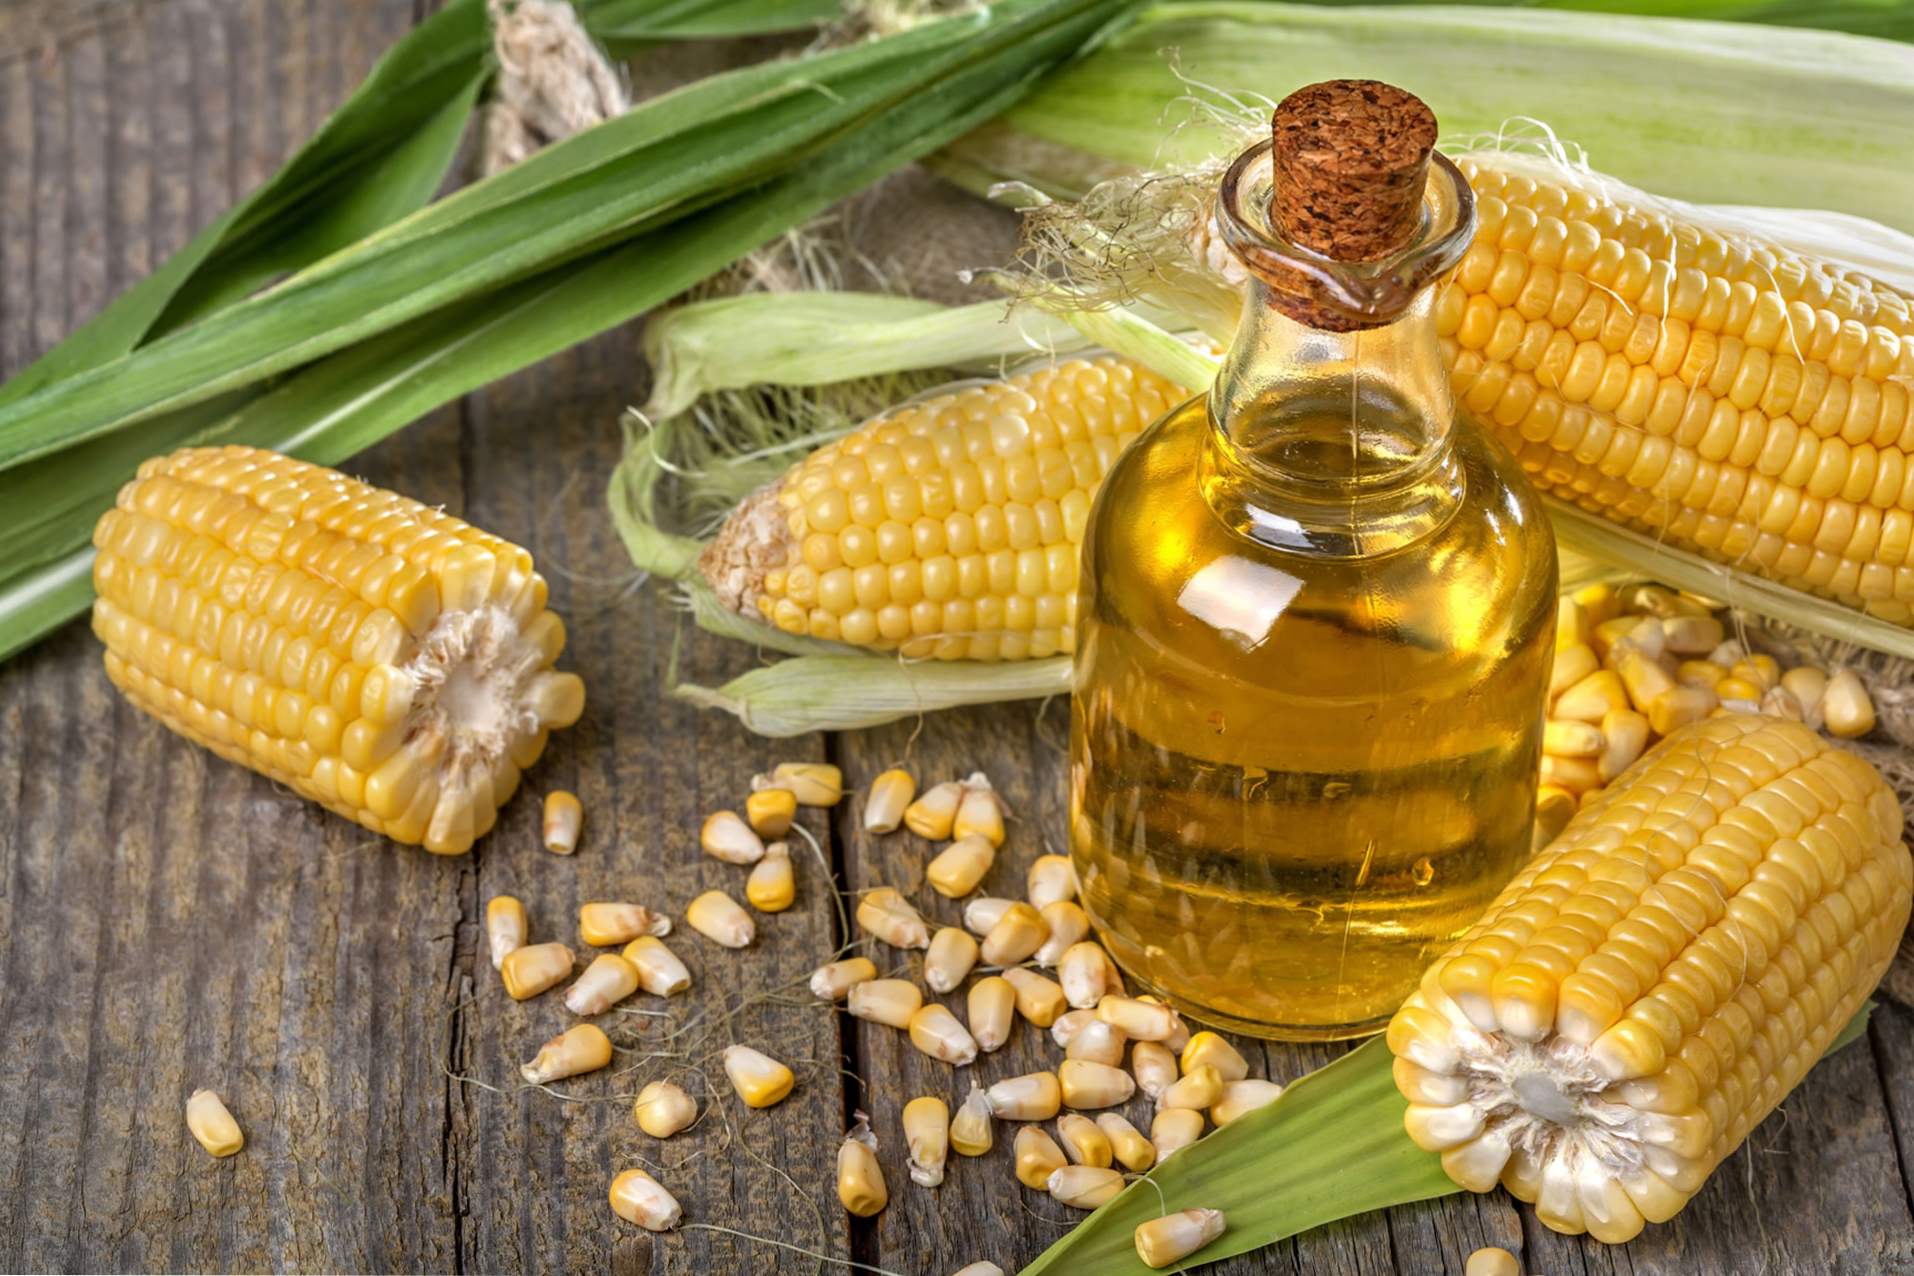 Kukuruzno ulje ima korisne osobine za ljudsko tijelo, korištenje u kuhanju i kozmetologiji, kontraindikacije